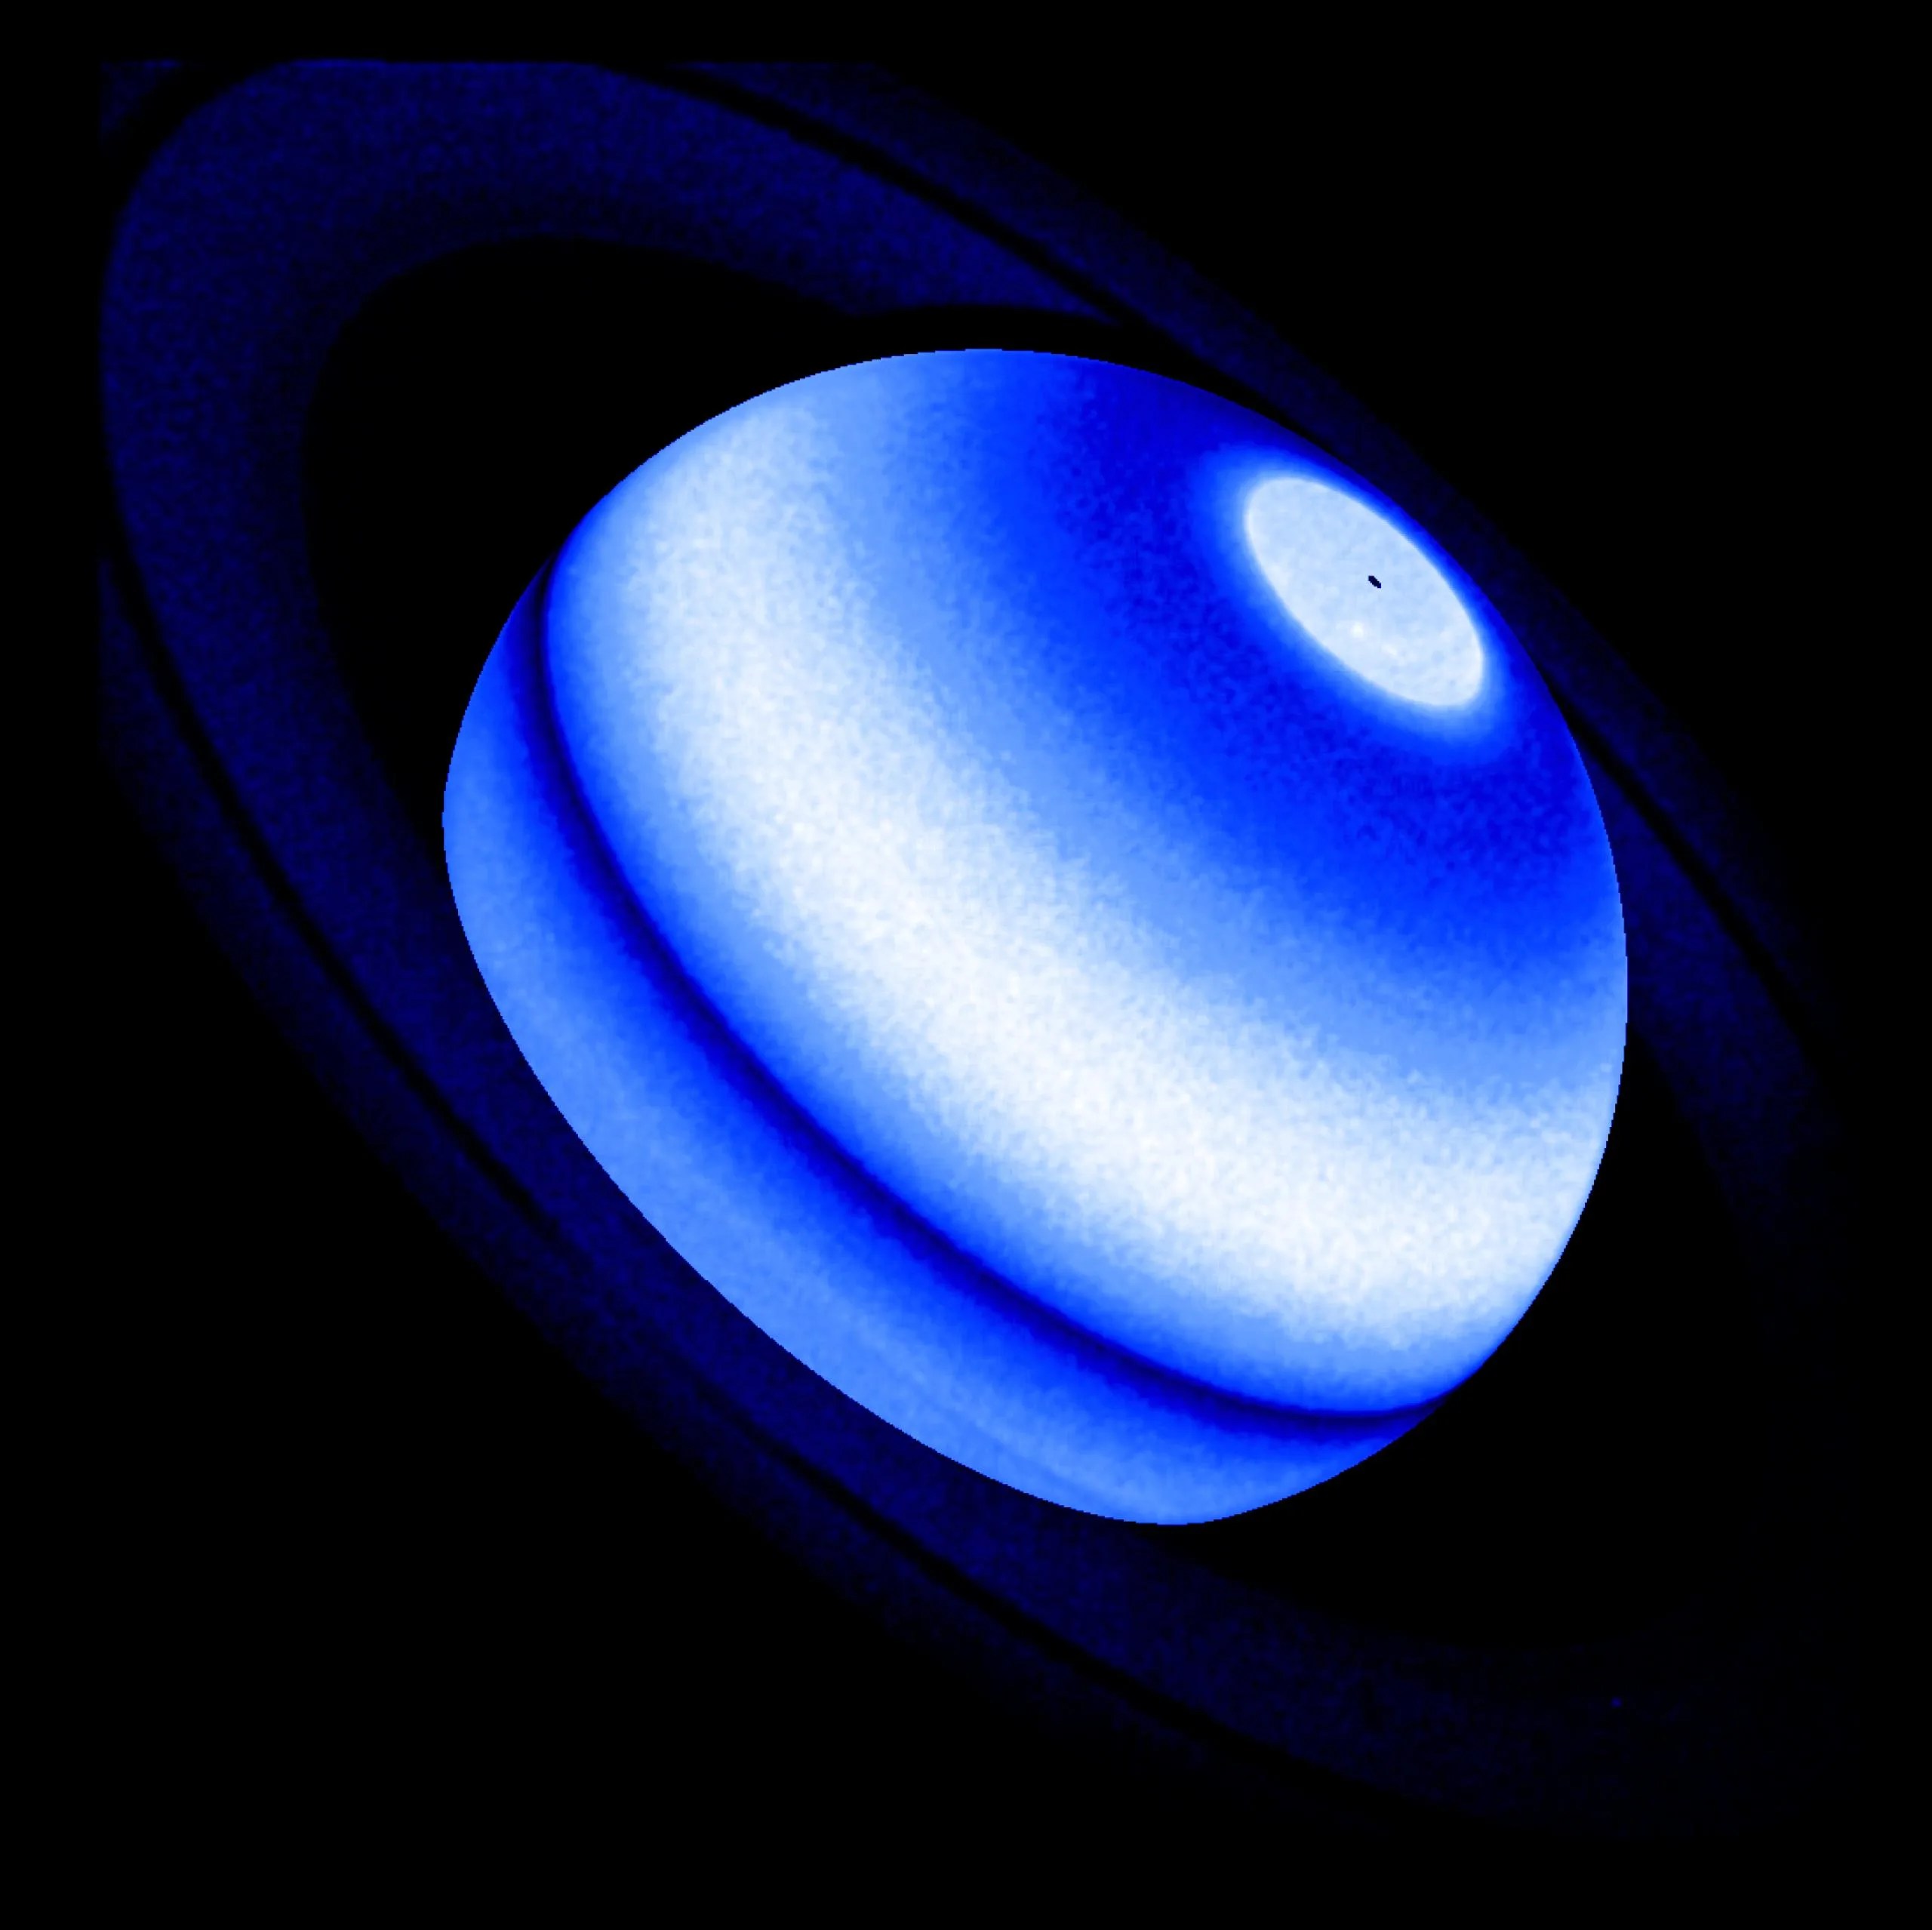 Esta imagen compuesta muestra la protuberancia de Lyman-alfa de Saturno, una emisión de hidrógeno que es un exceso persistente e inesperado detectado por tres misiones distintas de la NASA —Voyager 1, Cassini y el telescopio espacial Hubble— entre 1980 y 2017.